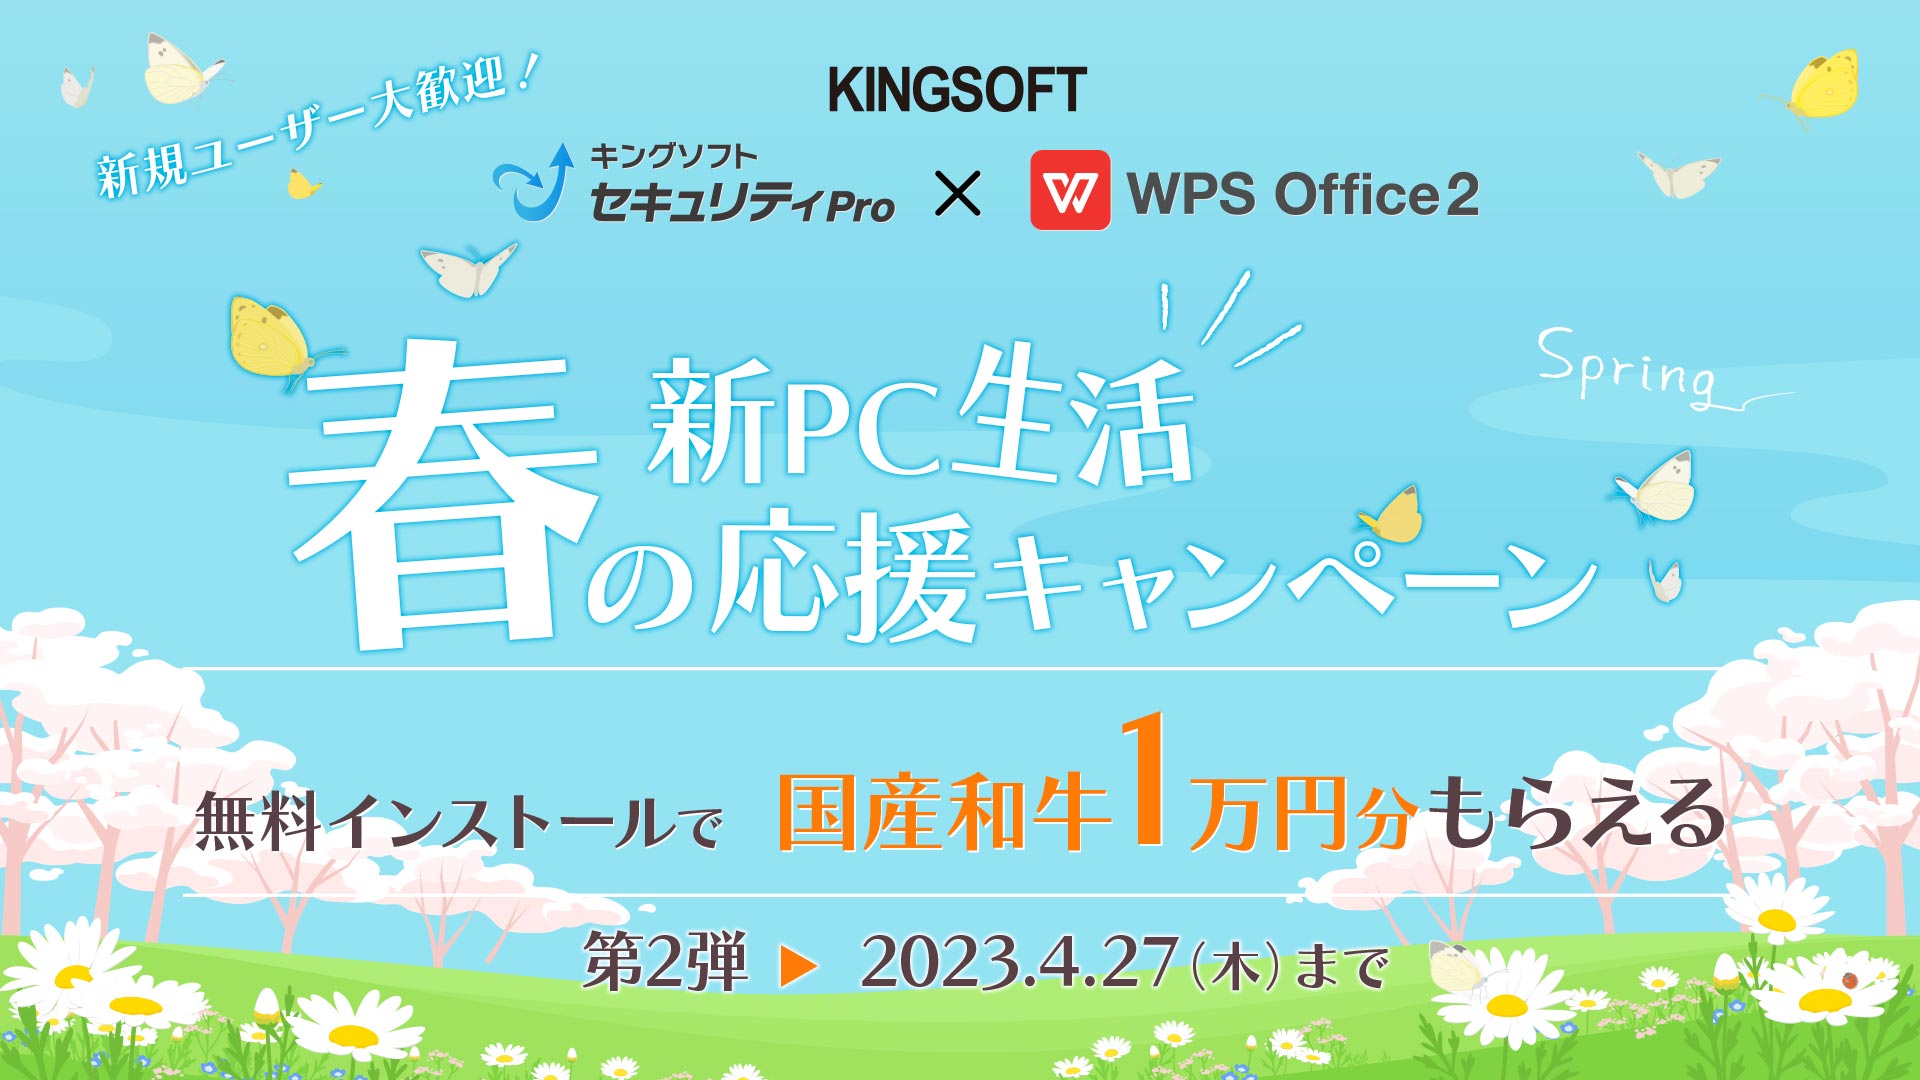 キングソフト、「春の新PC生活応援キャンペーン第2弾」を4月4日より開催